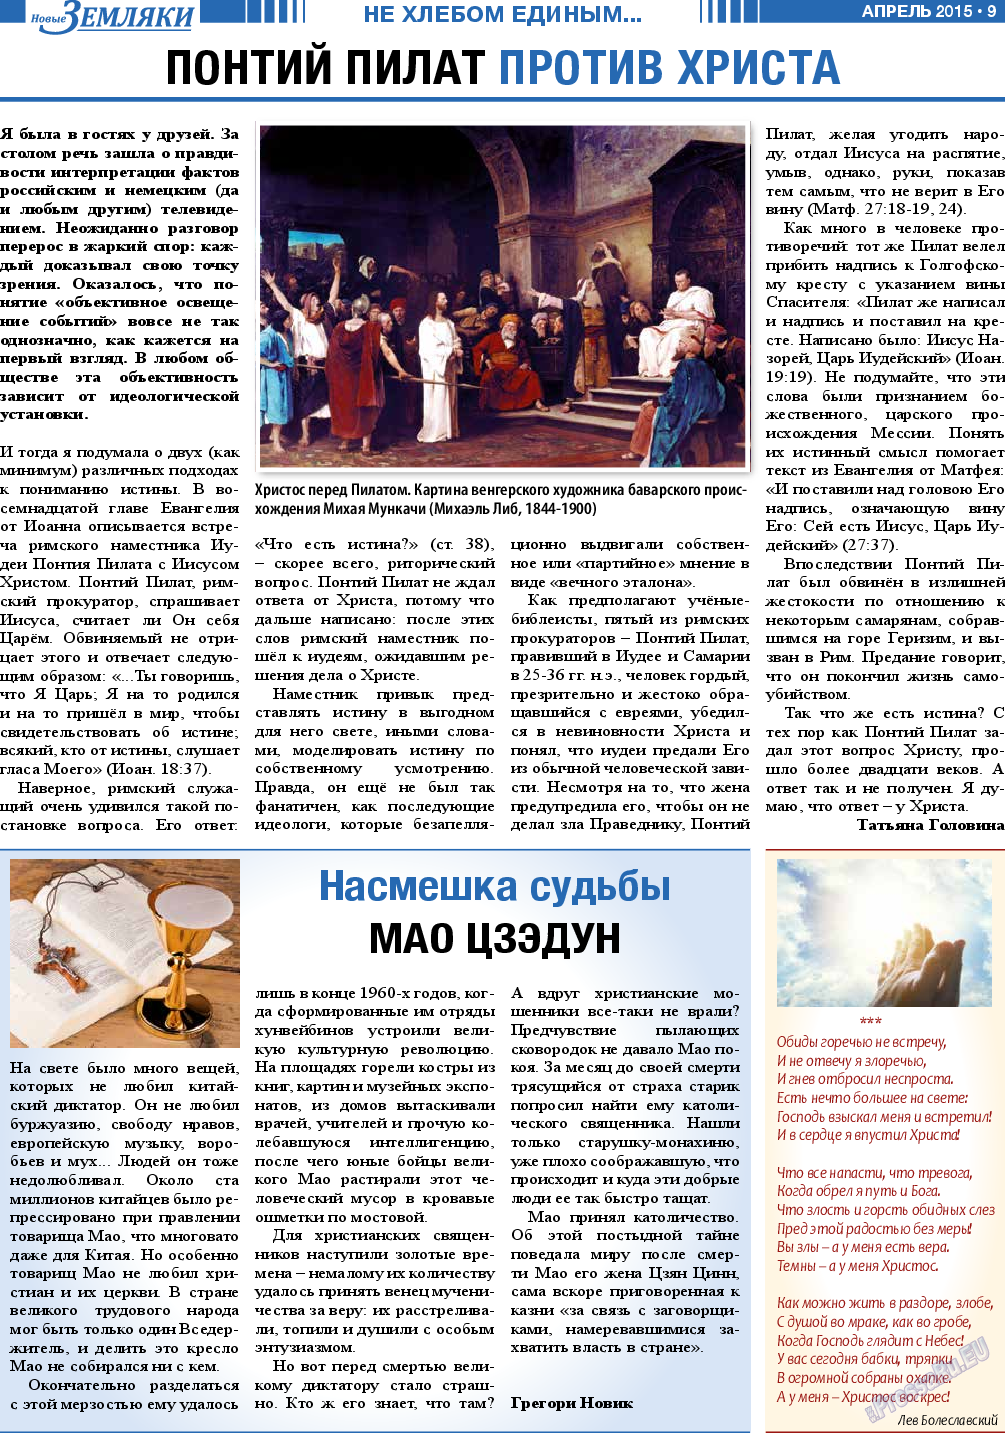 Новые Земляки (газета). 2015 год, номер 4, стр. 9